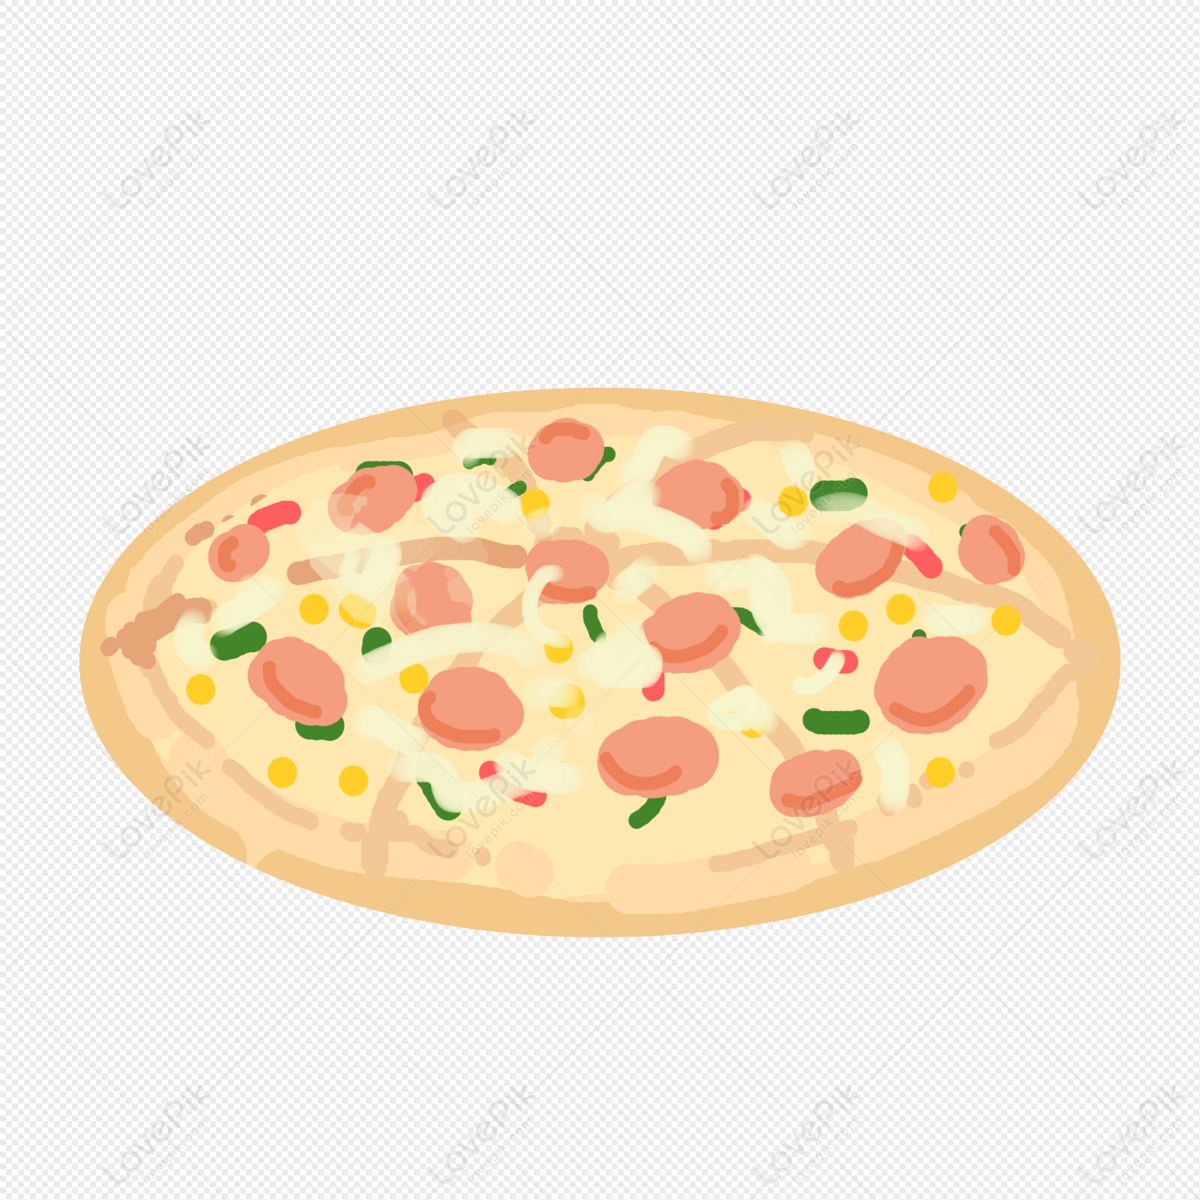 Bánh pizza : 1.070.834 ảnh, hình ảnh có sẵn và ảnh miễn phí bản quyền |  Shutterstock